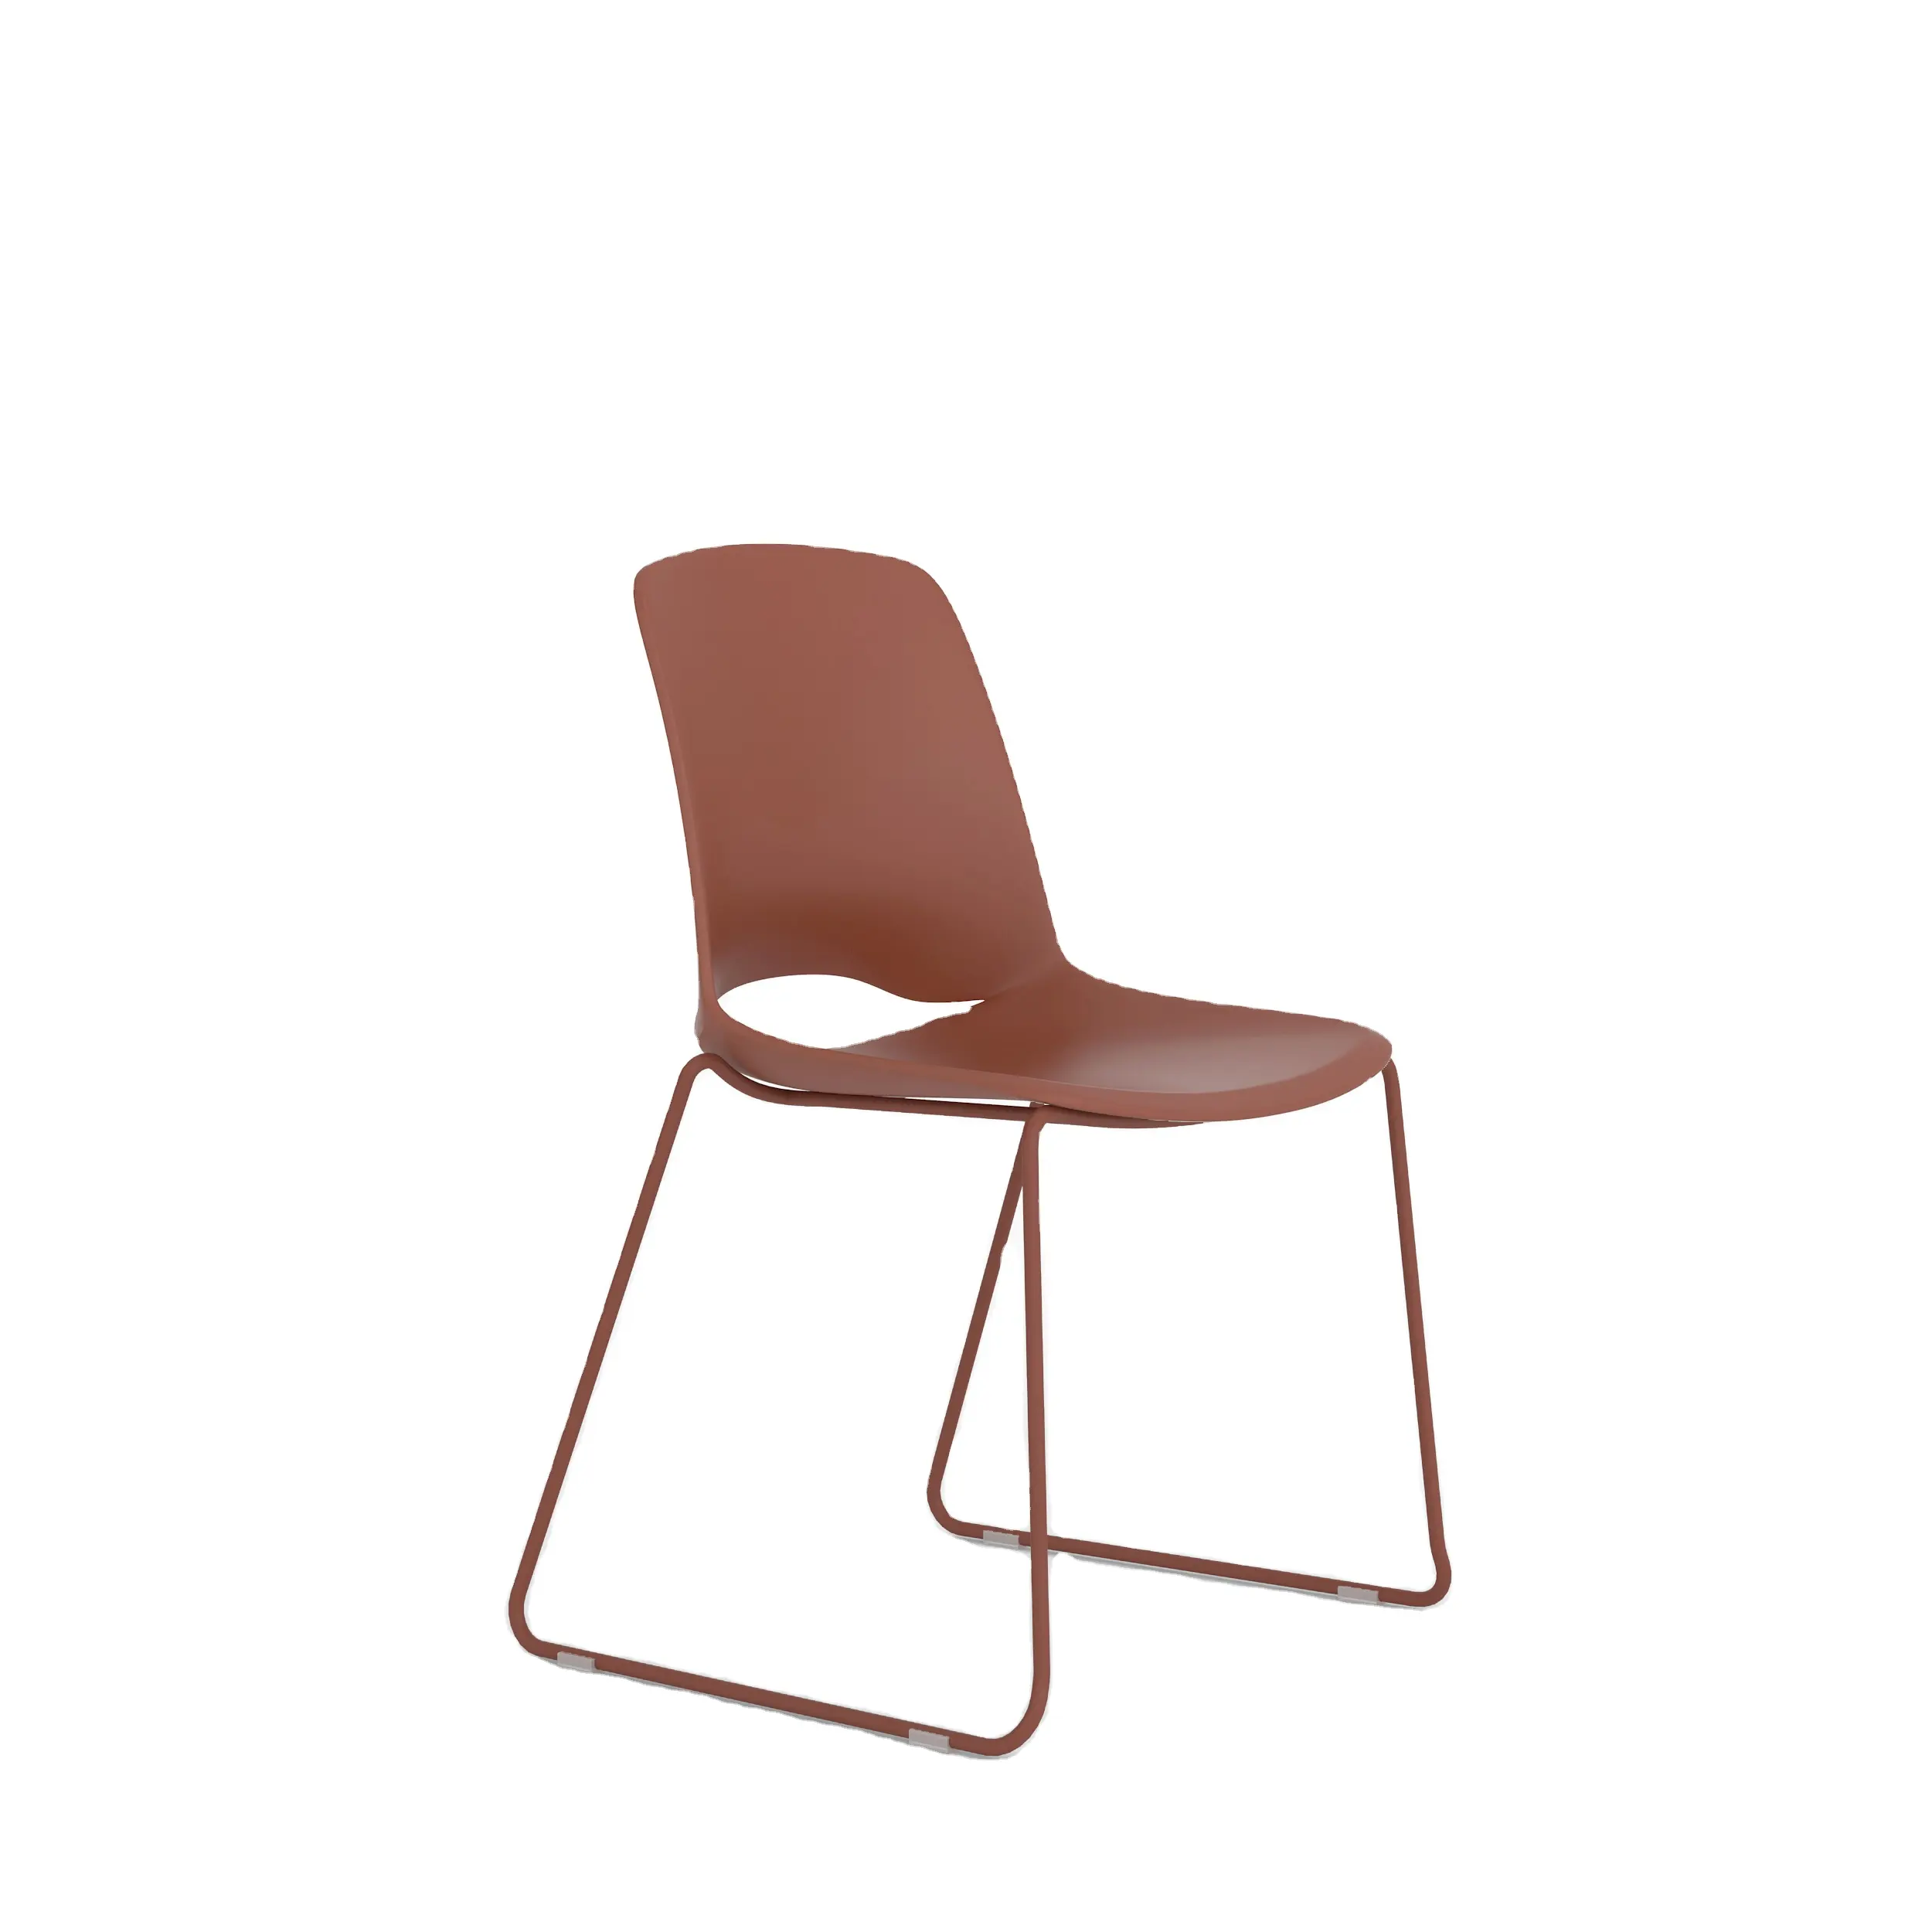 การออกแบบที่ทันสมัยพลาสติกสีแดงคาเฟ่โลหะขาเหล็กร้านอาหารเก้าอี้รับประทานอาหาร